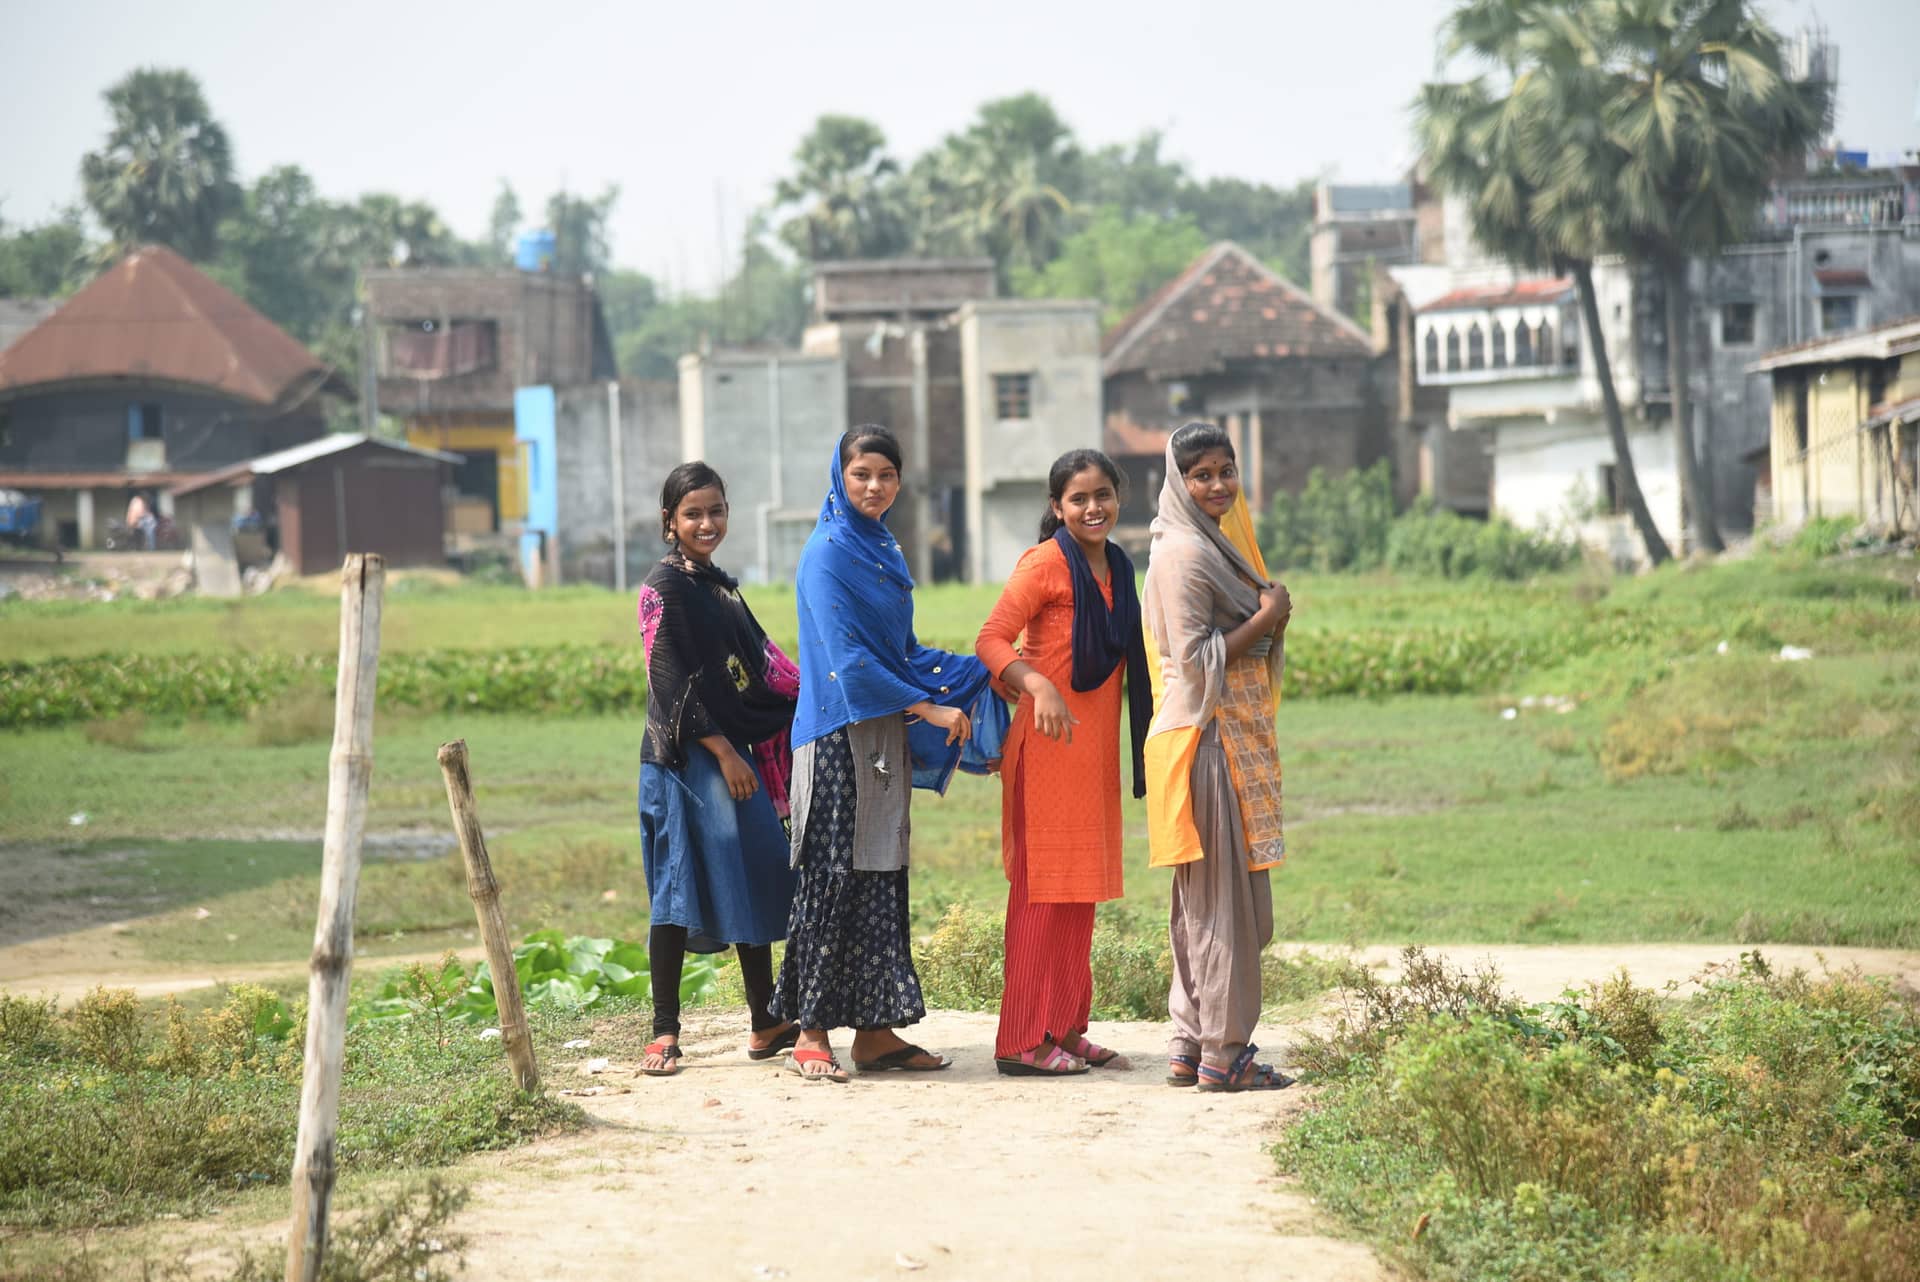 Udaan-Murshidabad: Adolescent Rights & Gender Justice